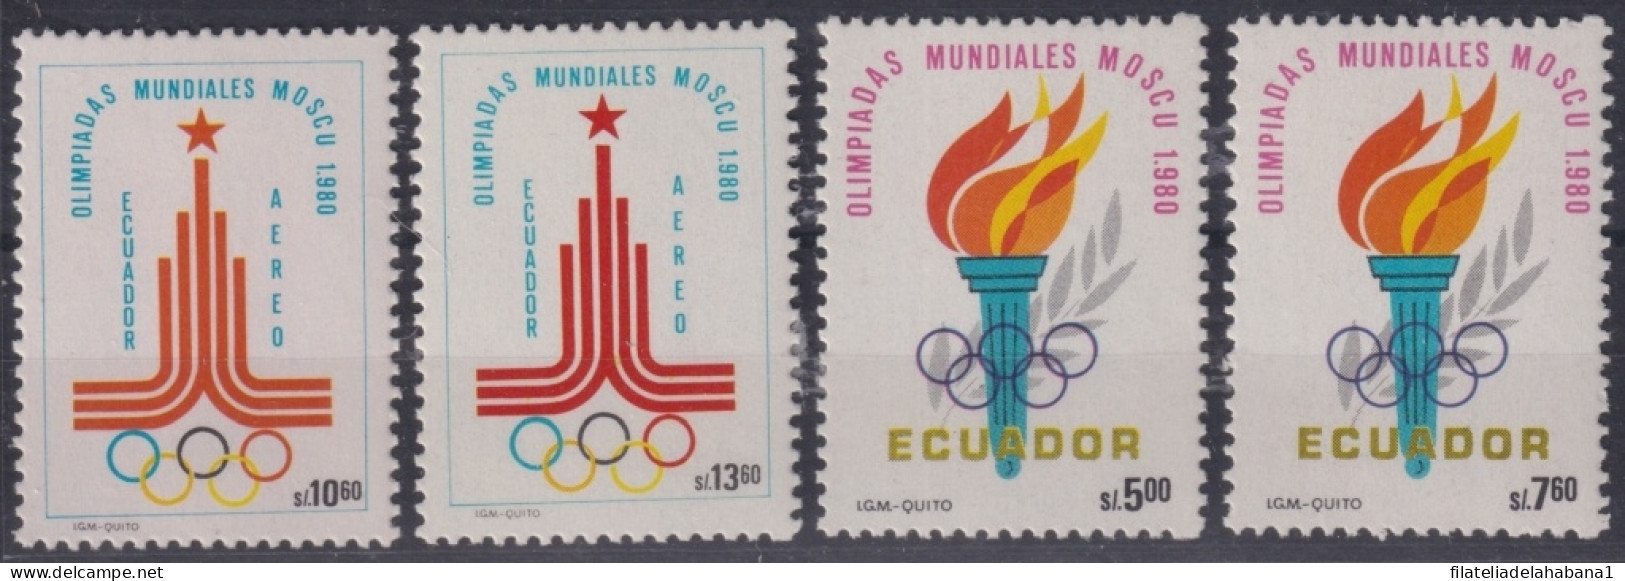 F-EX50102 ECUADOR MNH 1980 MOSCOW OLYMPIC GAMES.            - Estate 1980: Mosca